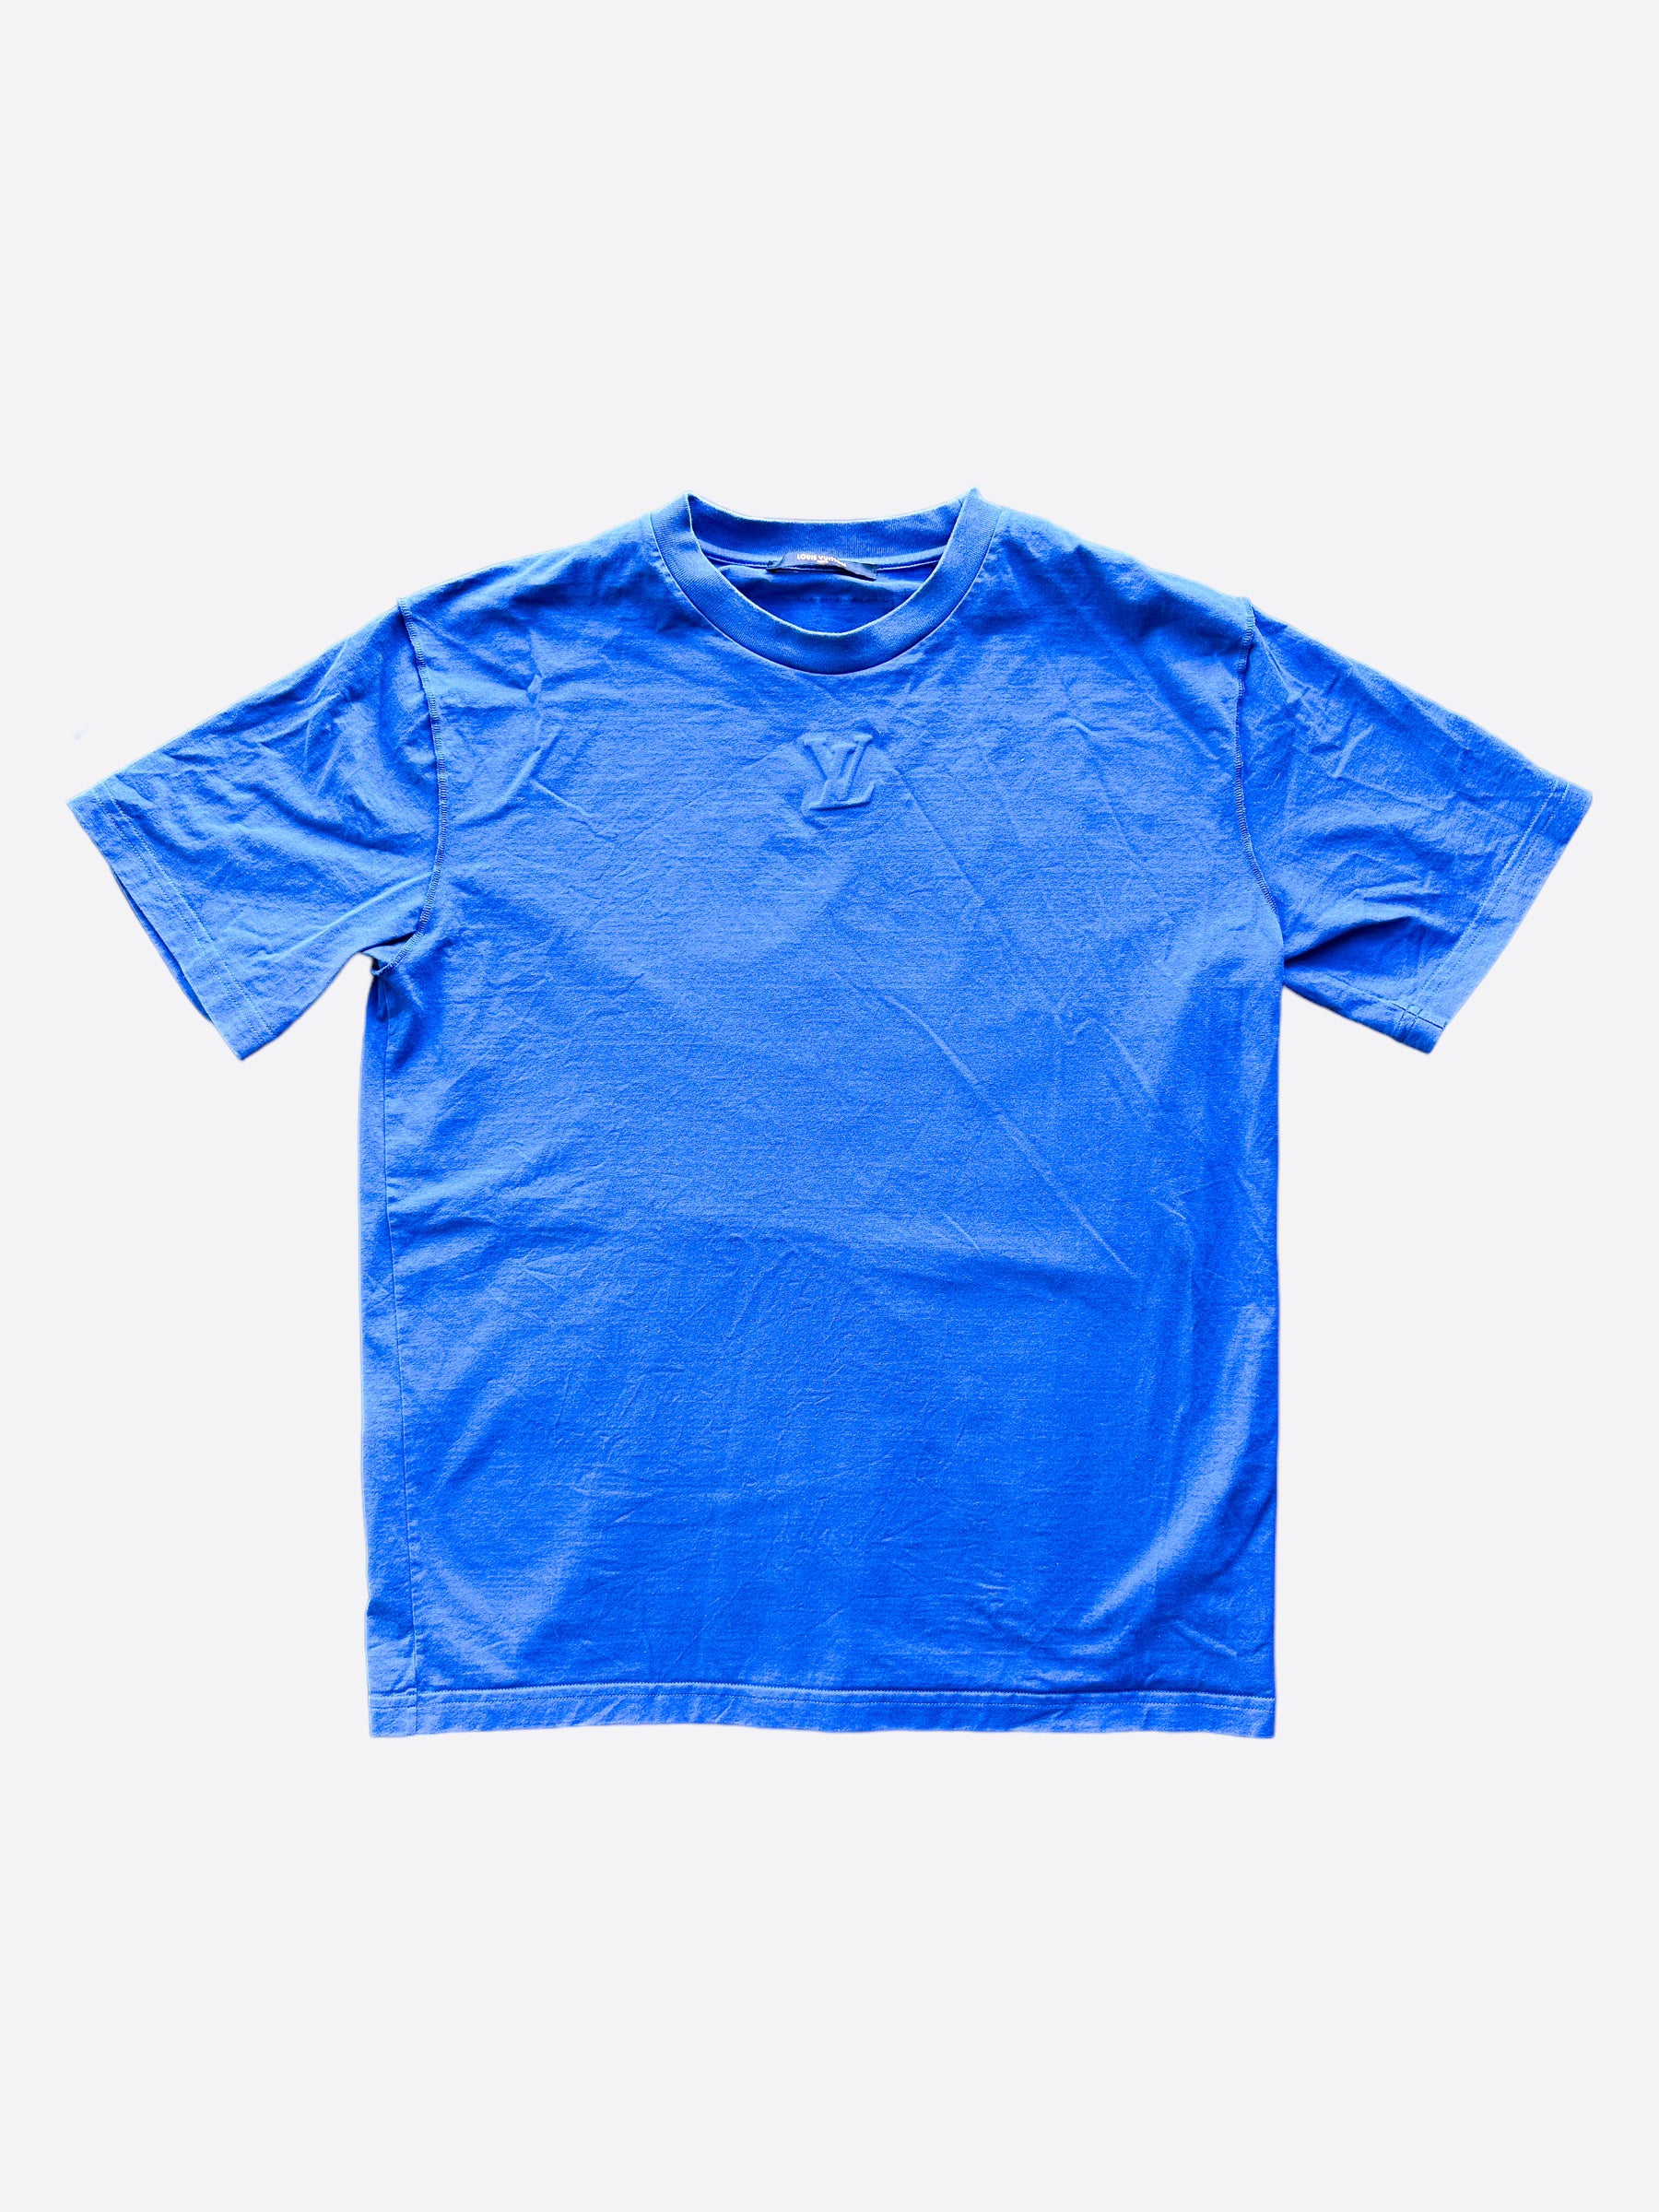 louis vuitton t-shirt blue